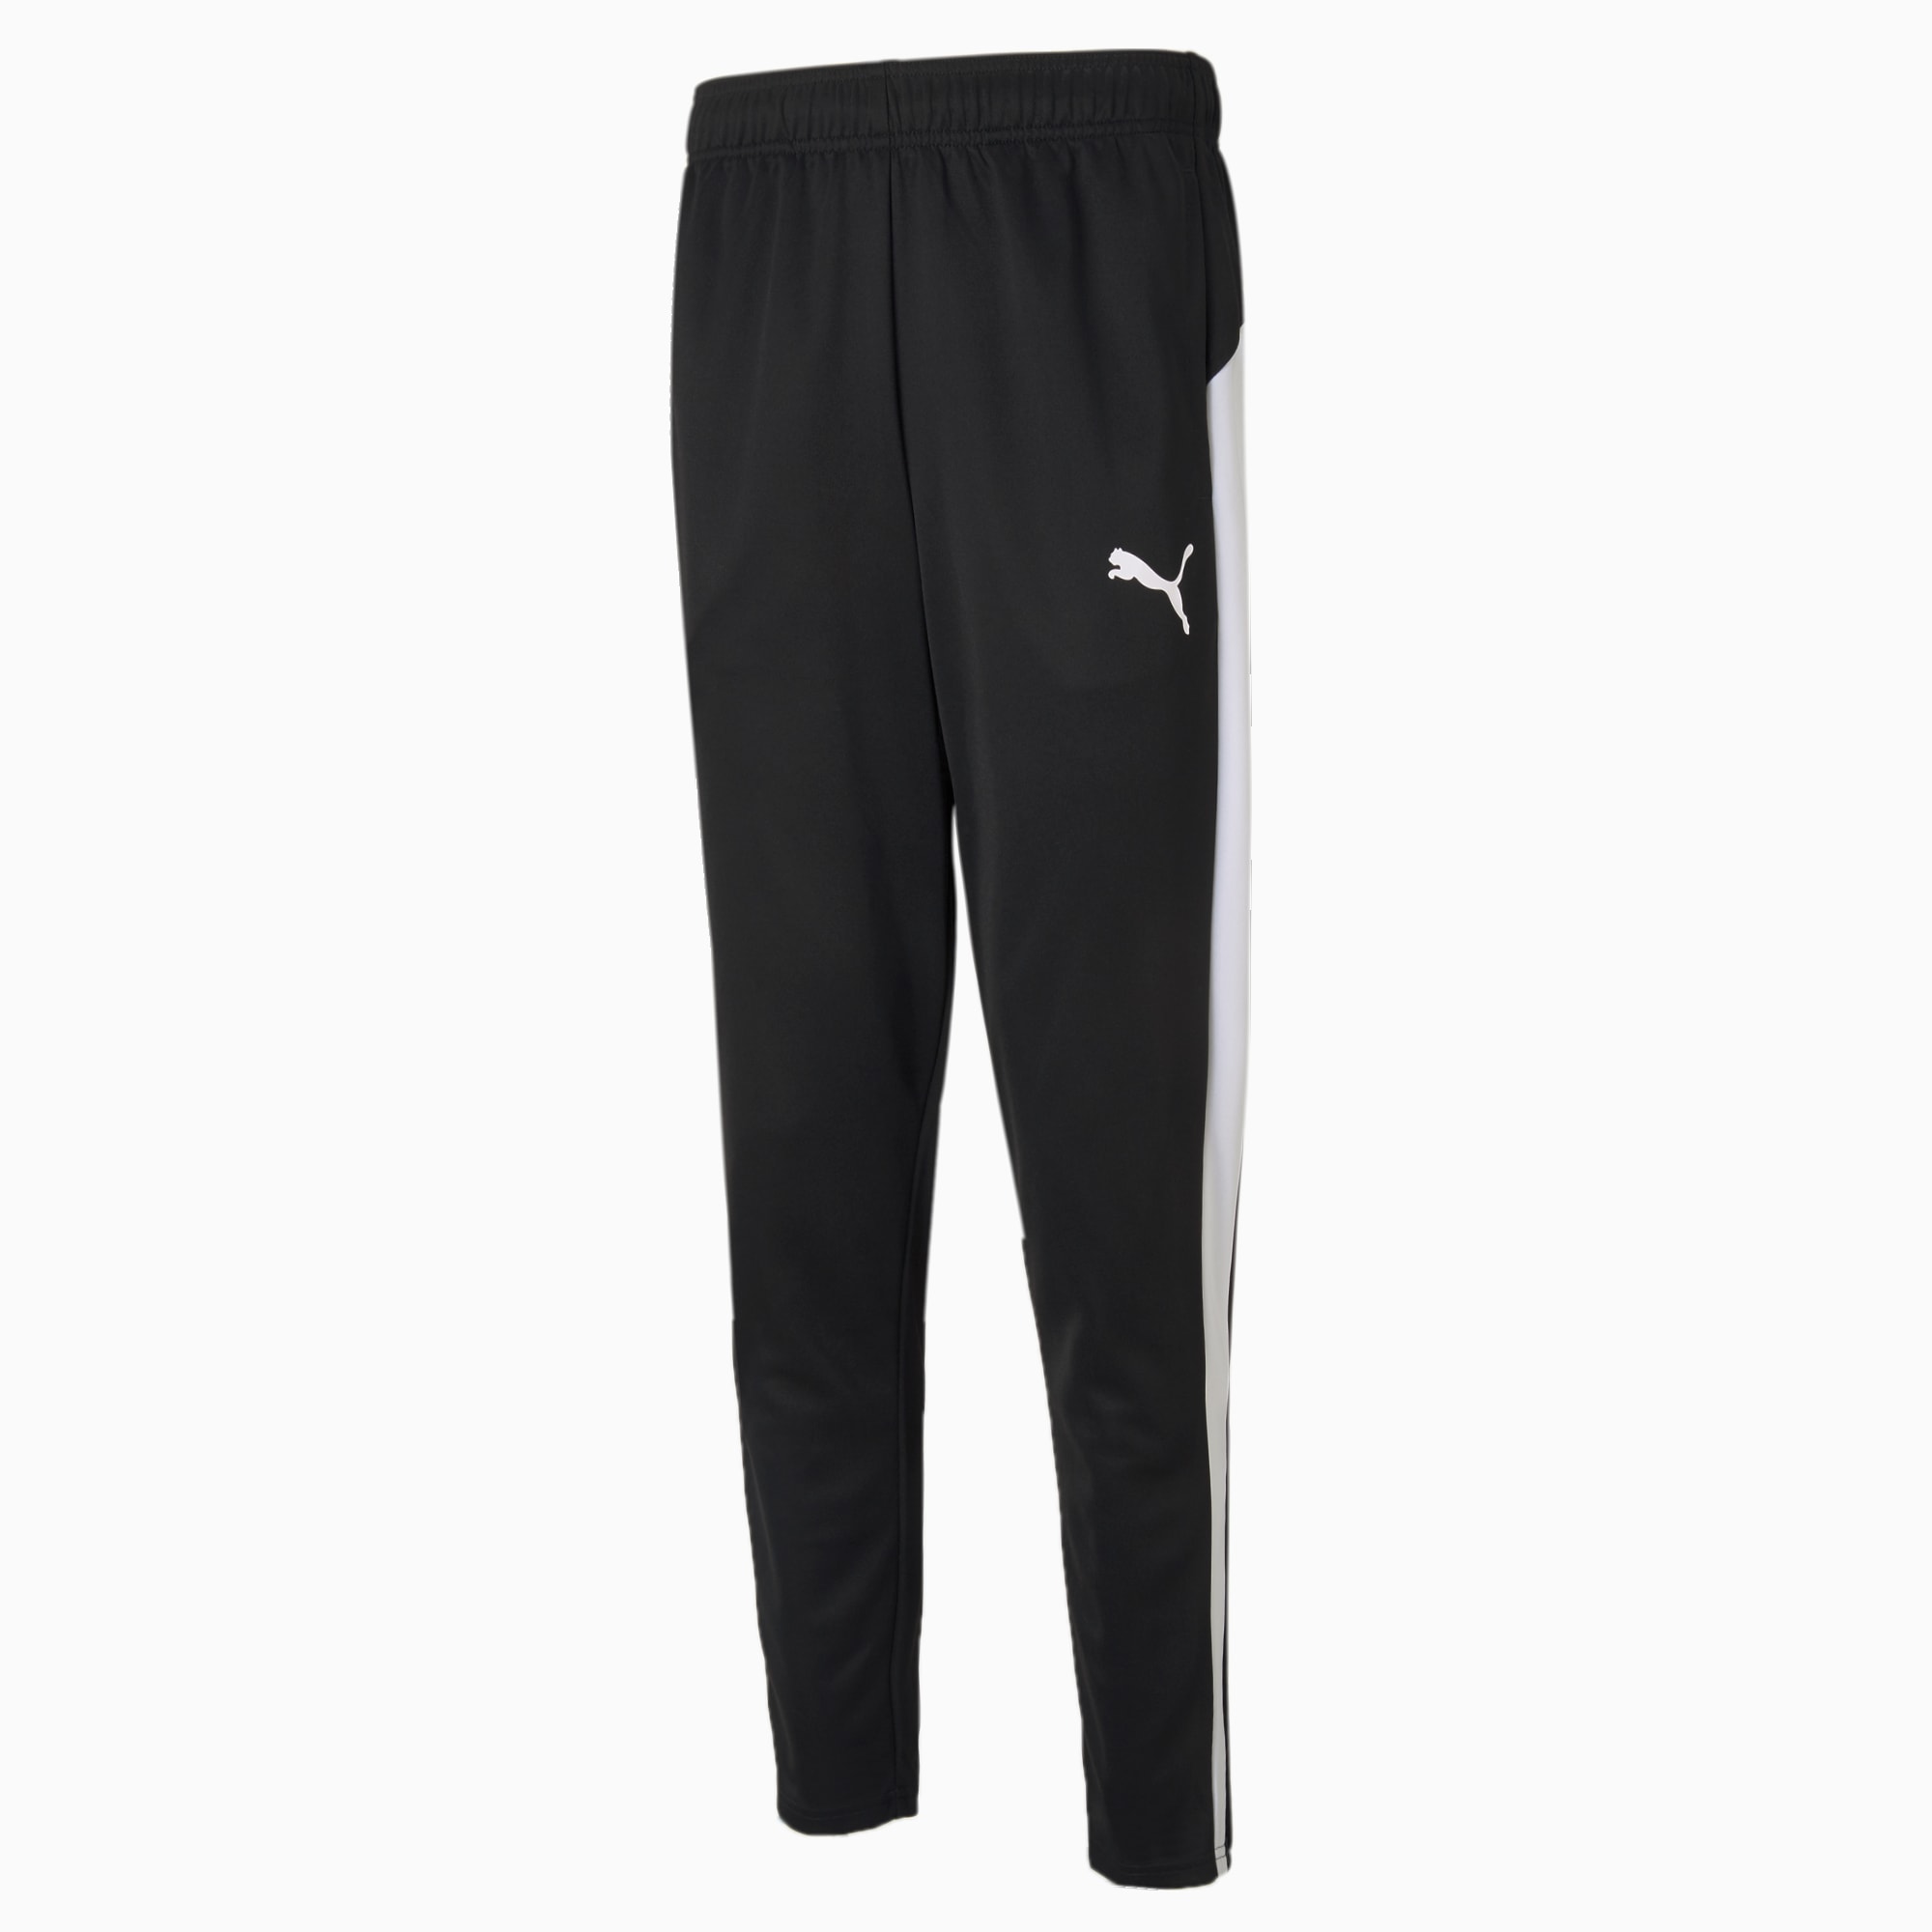 PUMA Active Tricot Men's Sweatpants, Black/White, Size M, Clothing